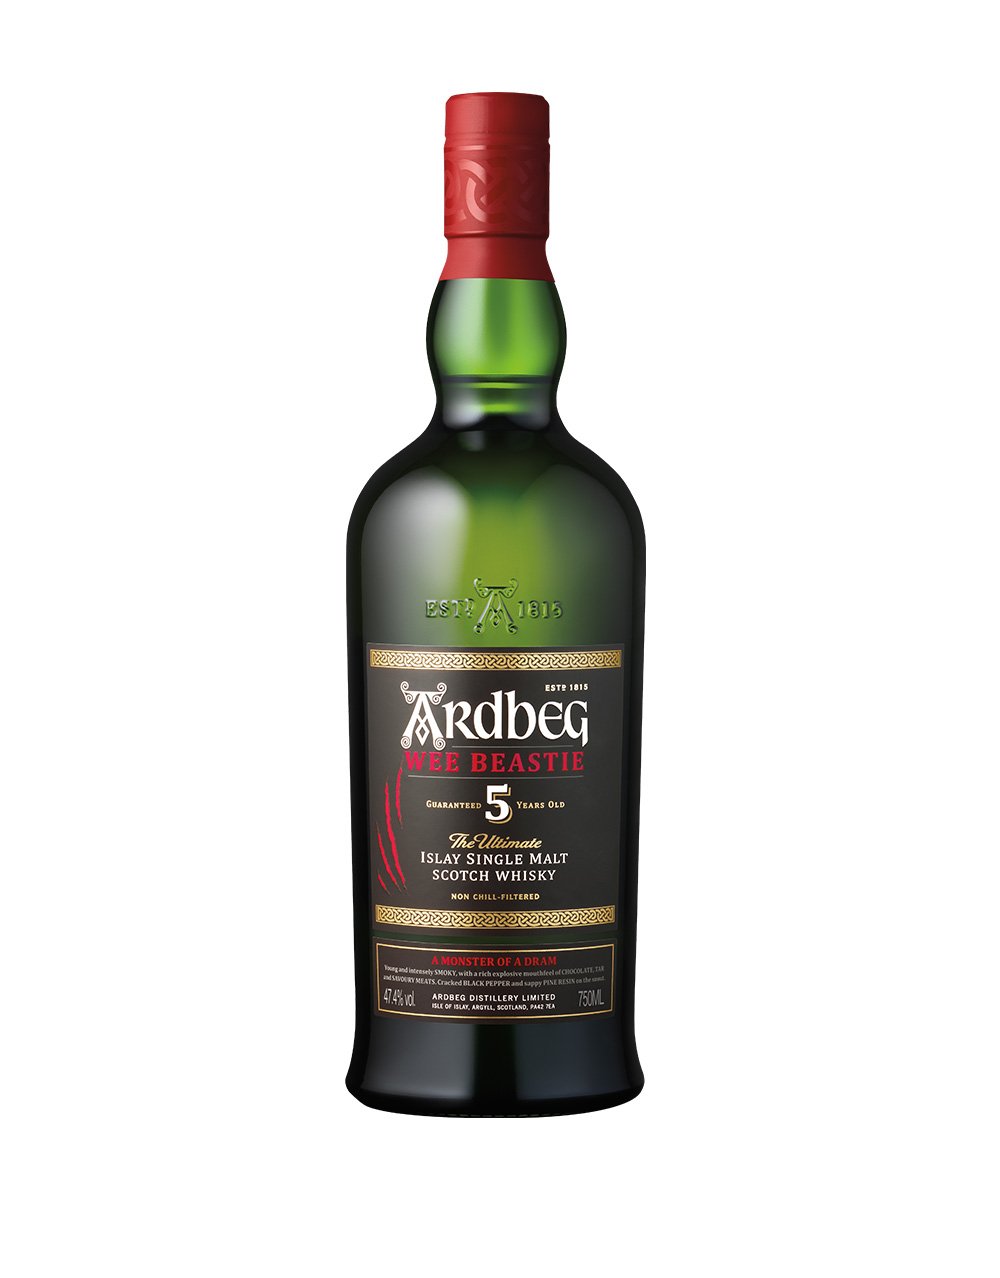 Ardbeg Wee Beastie Single Malt Scotch Whisky bottle